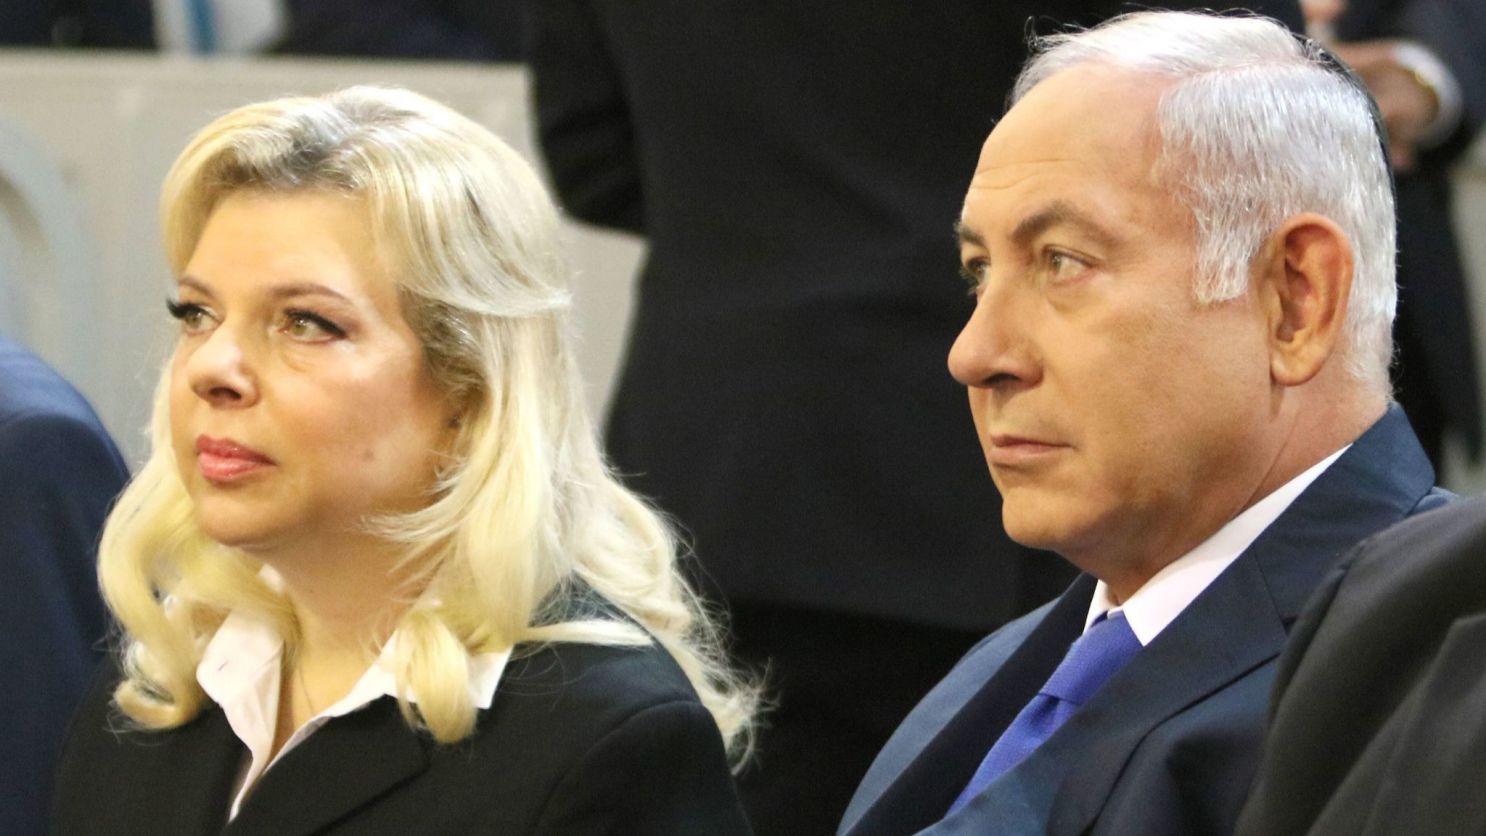 Netanyahu'nun eşi hastaneye kaldırıldı